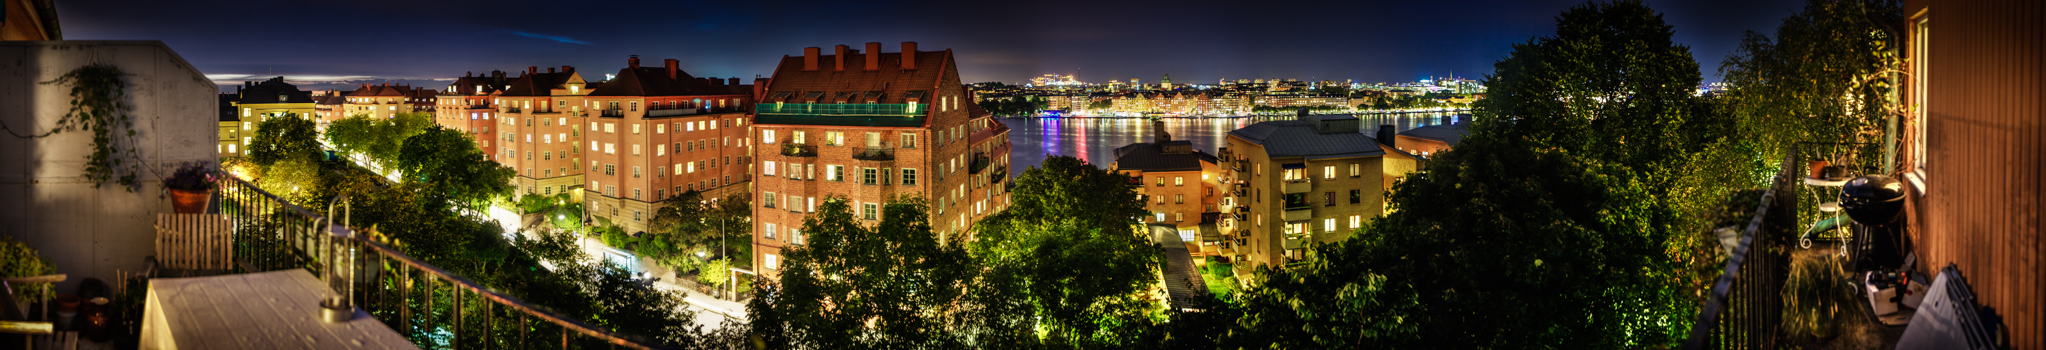 Stockholm_by_night_2K